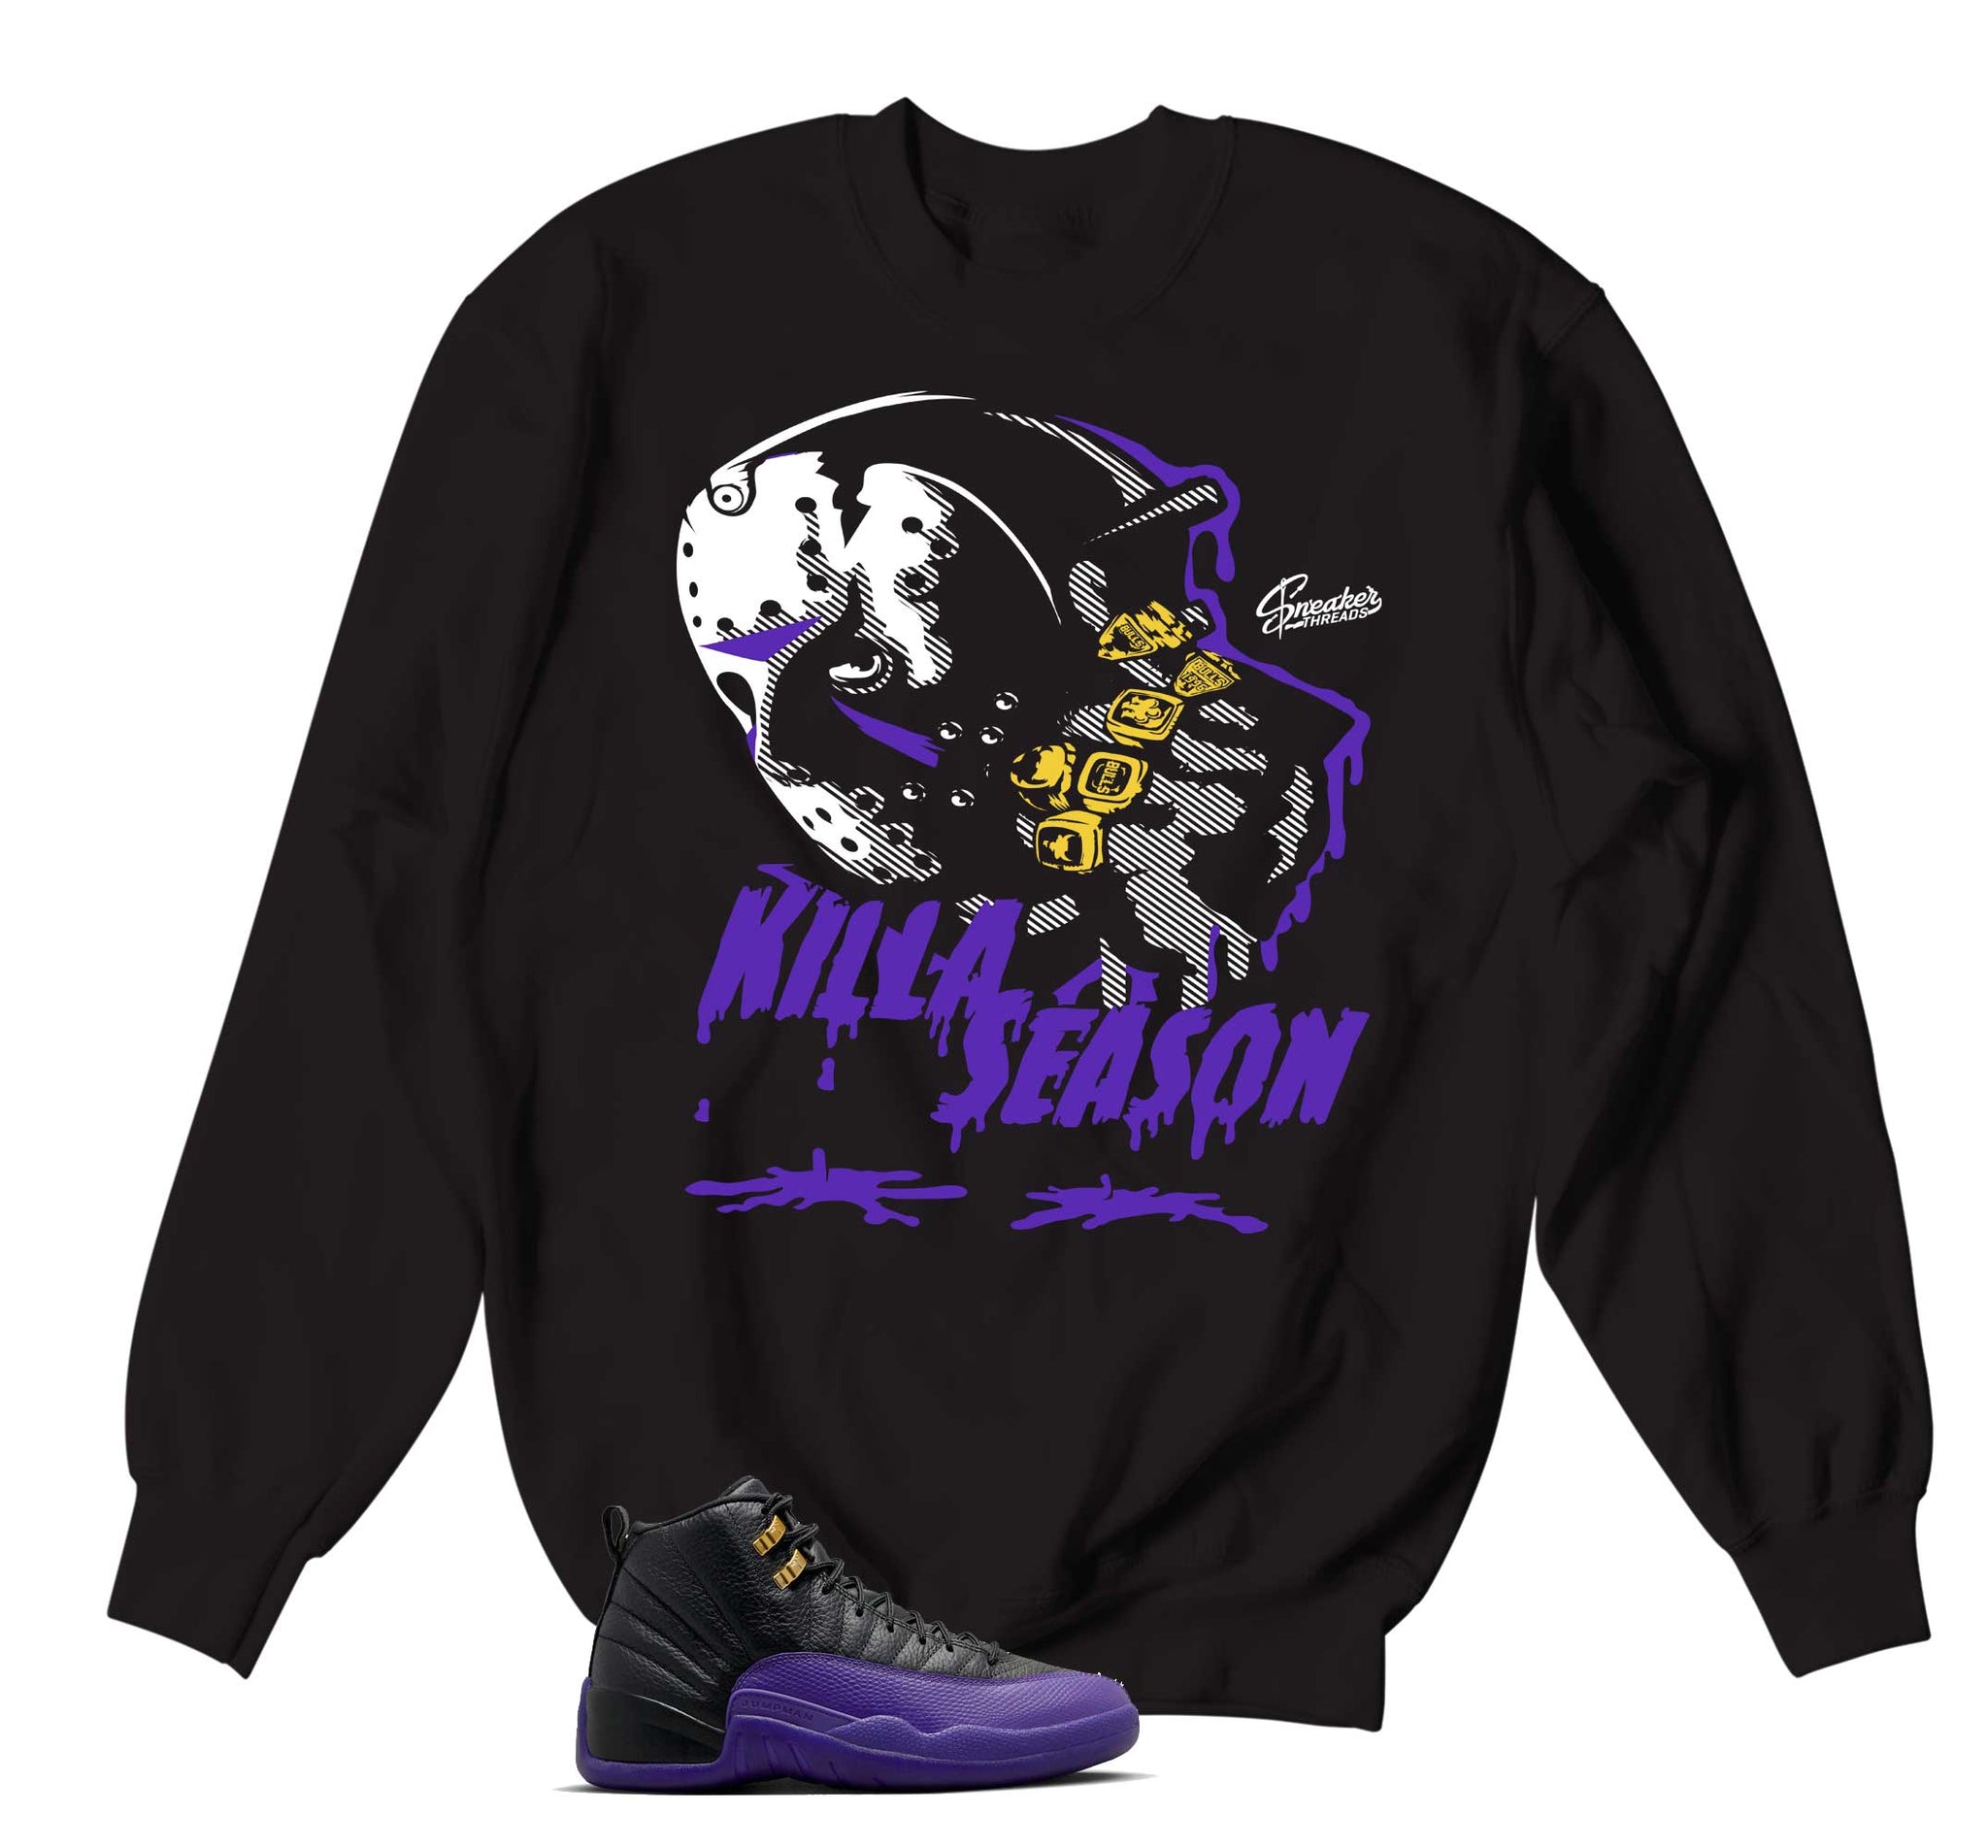 Retro 12 Field Purple Sweater - Killa Season - Black